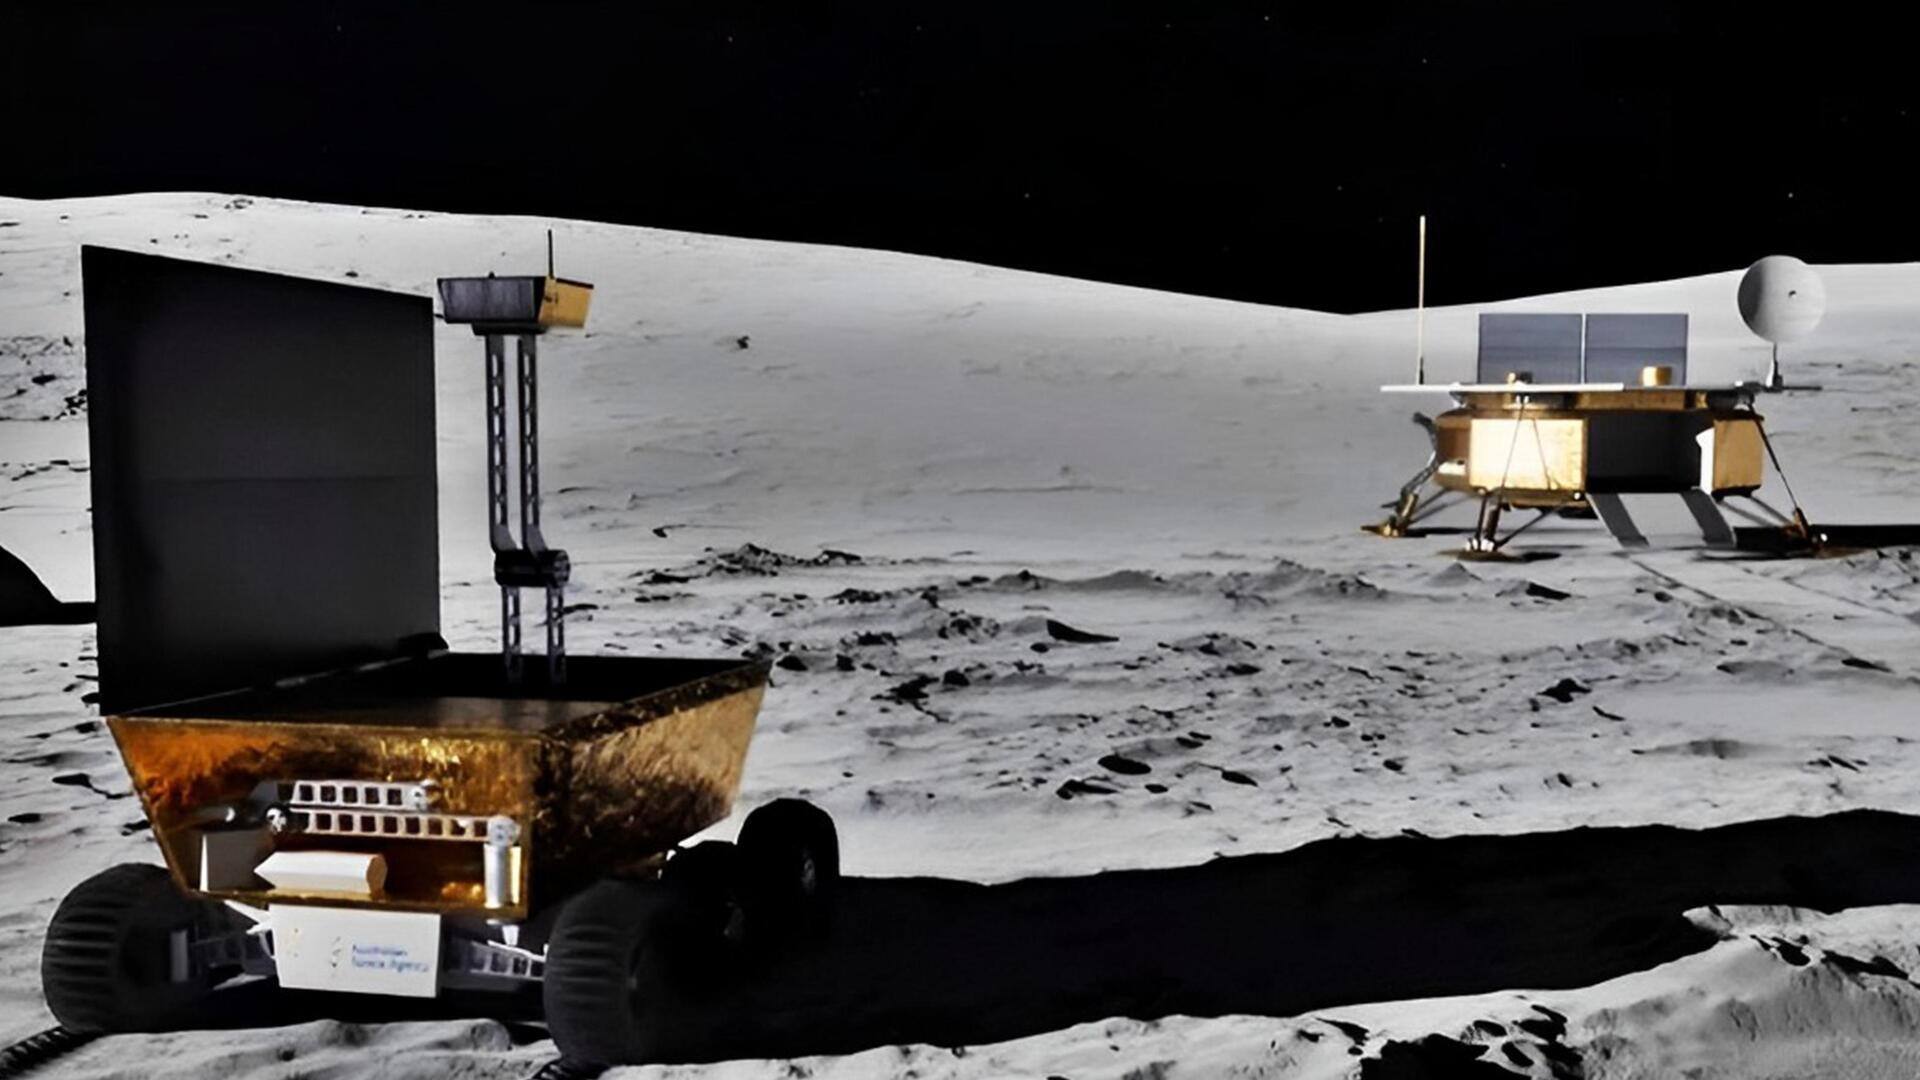 ऑस्ट्रेलिया ने की चांद मिशन की घोषणा, चंद्रमा की मिट्टी से ऑक्सीजन निकालने की तैयारी